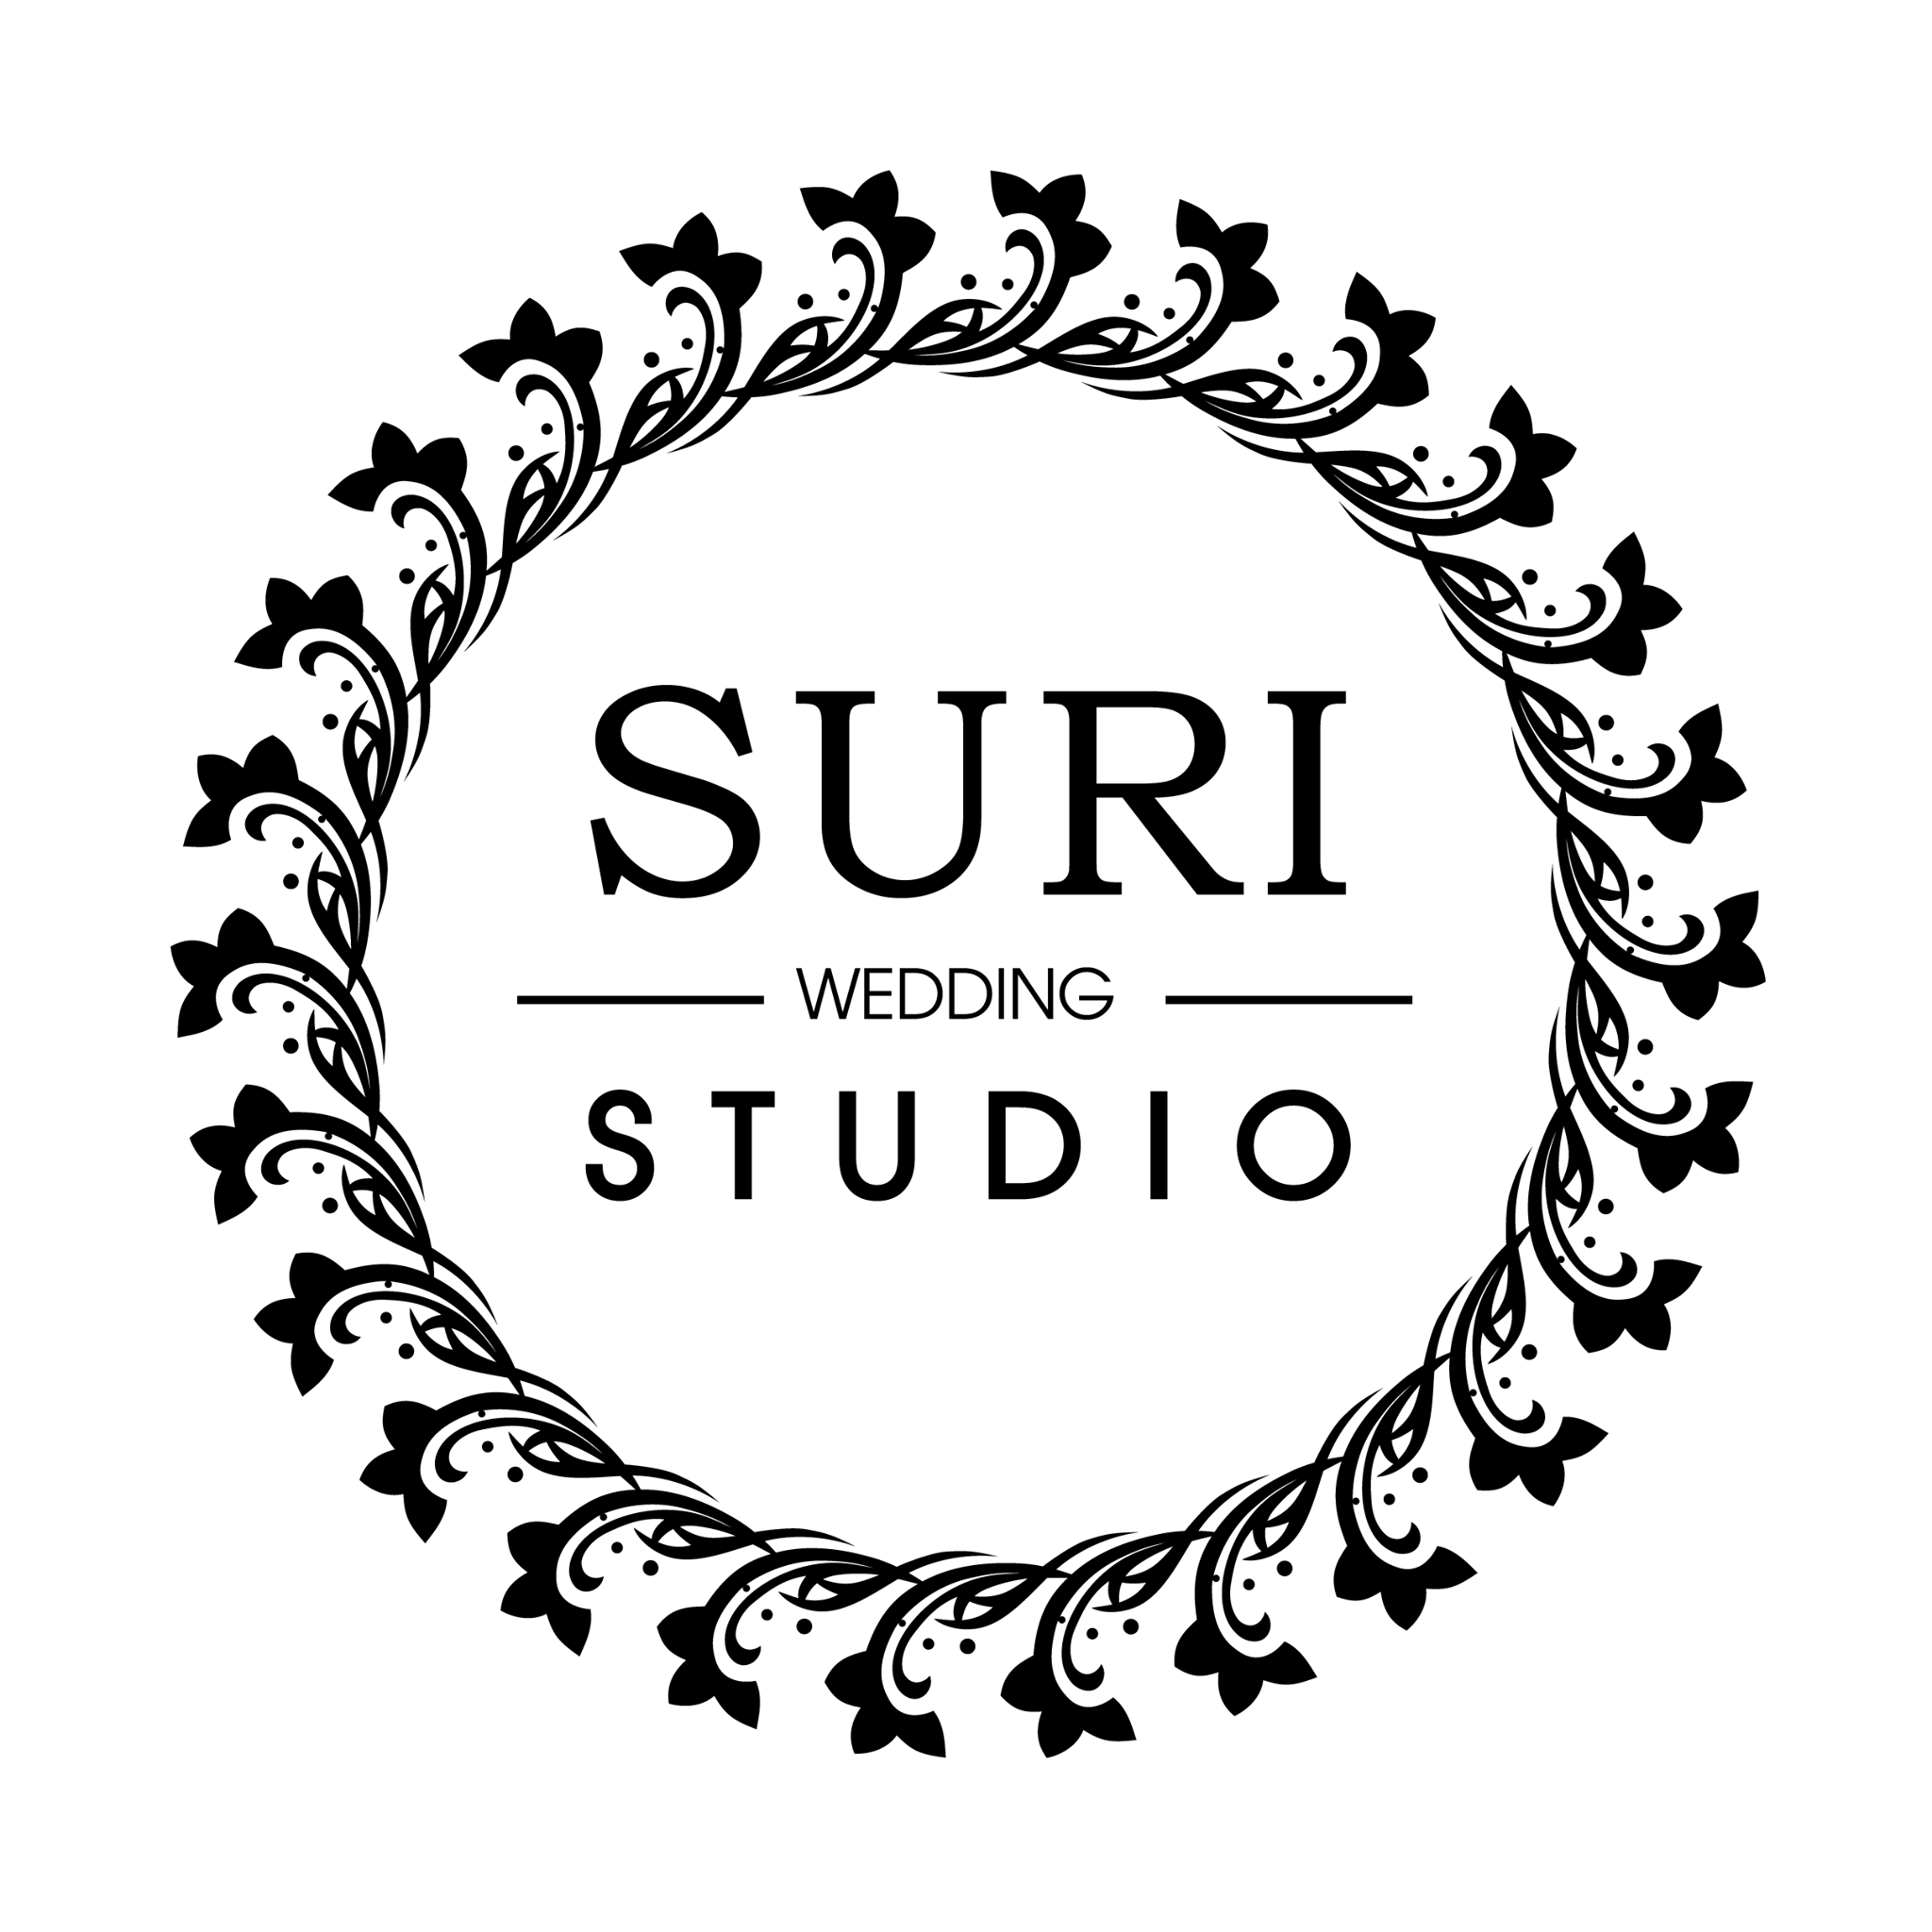 Suri Wedding Studio